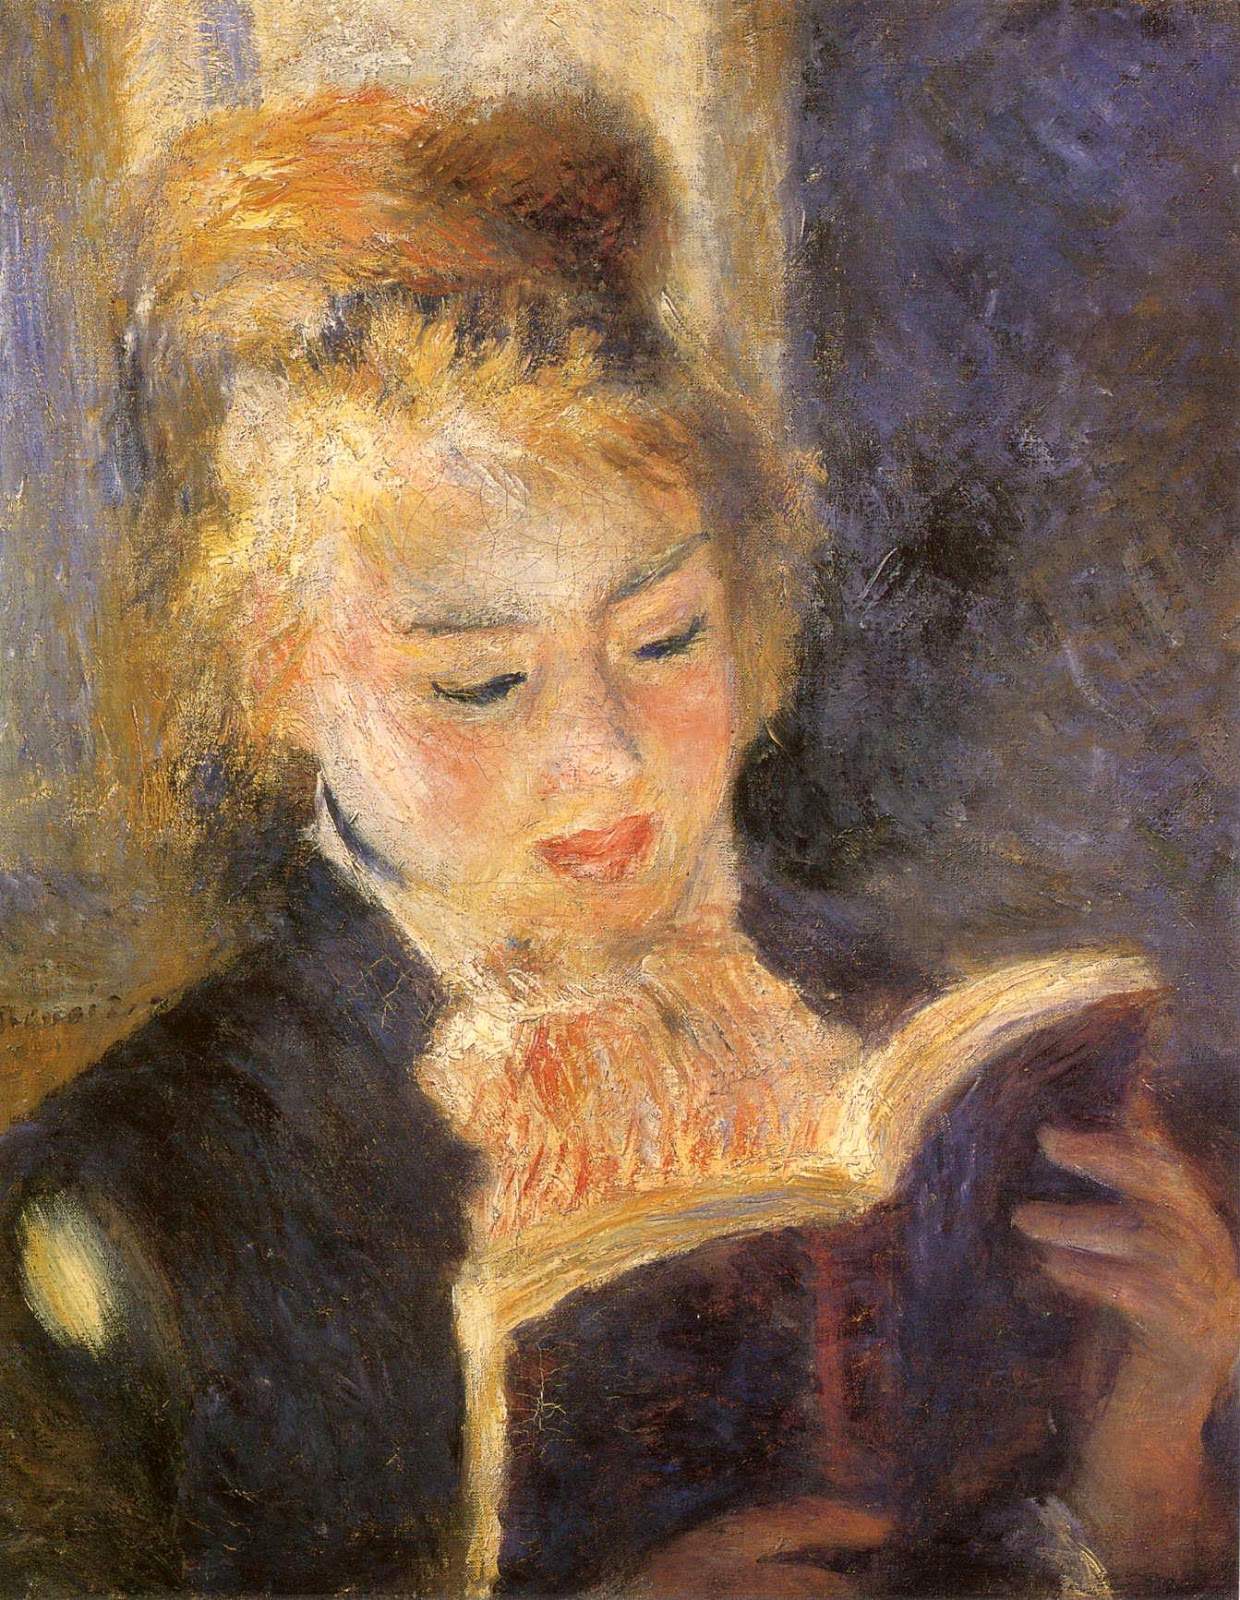 Pierre+Auguste+Renoir-1841-1-19 (940).jpg